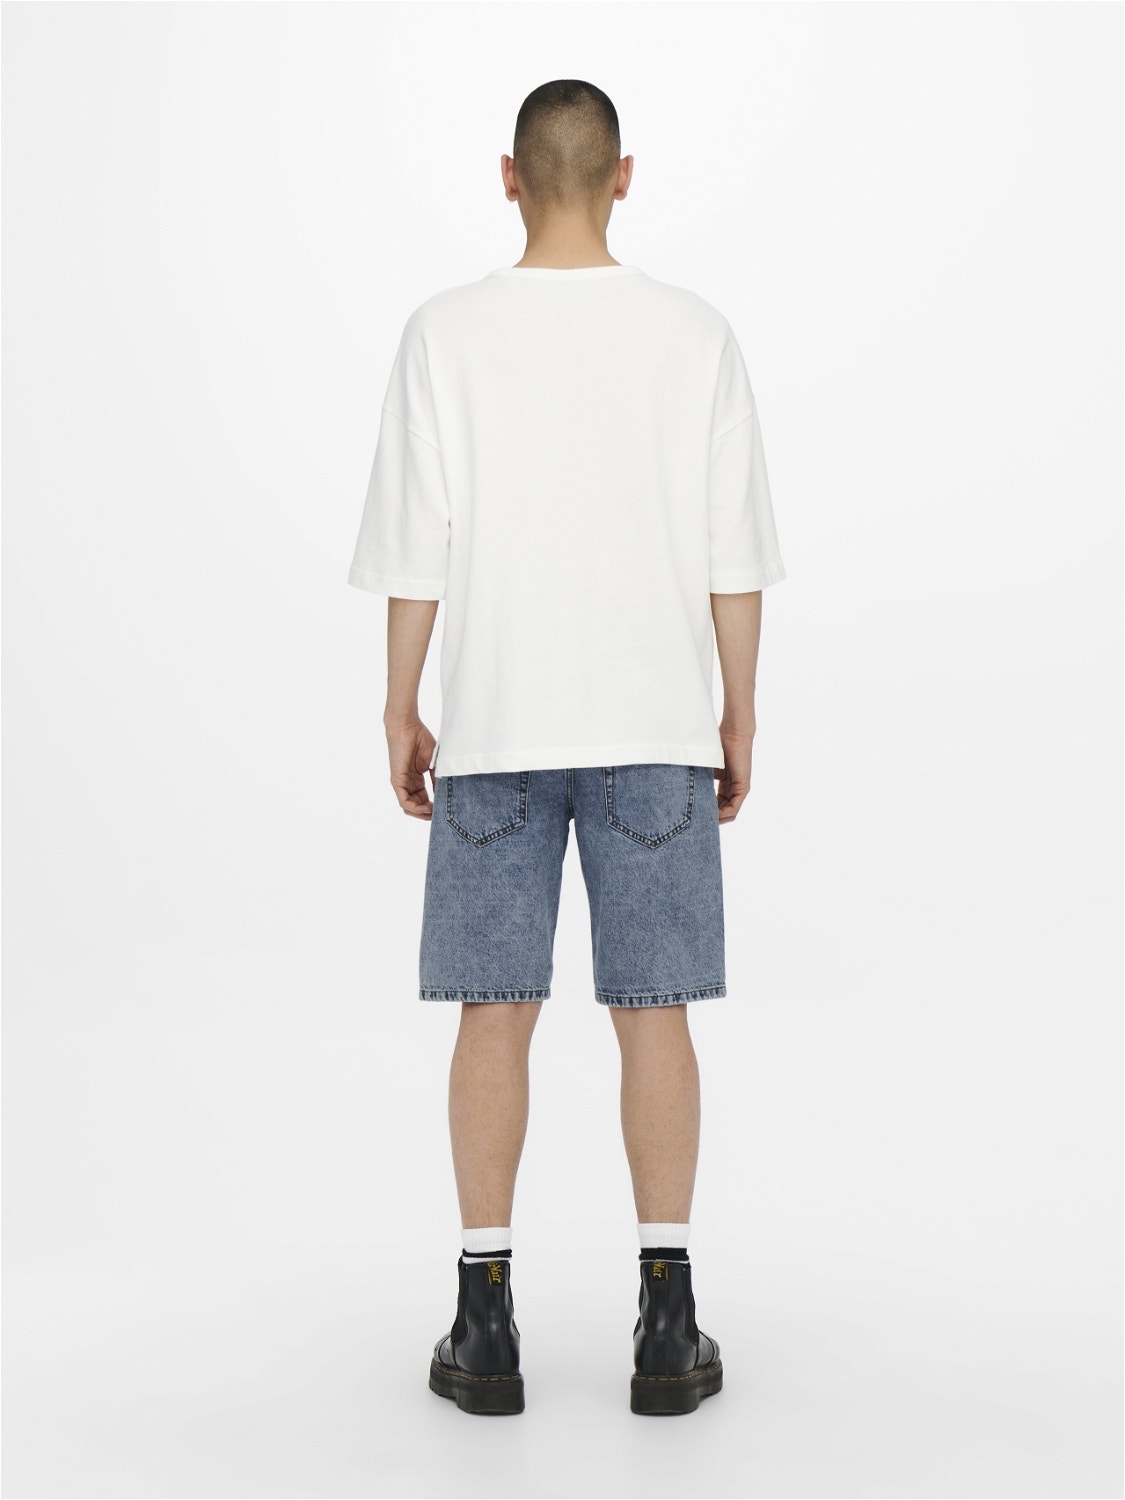 ONLY & SONS Komfort Fit Shorts -Blue Denim - 22021908